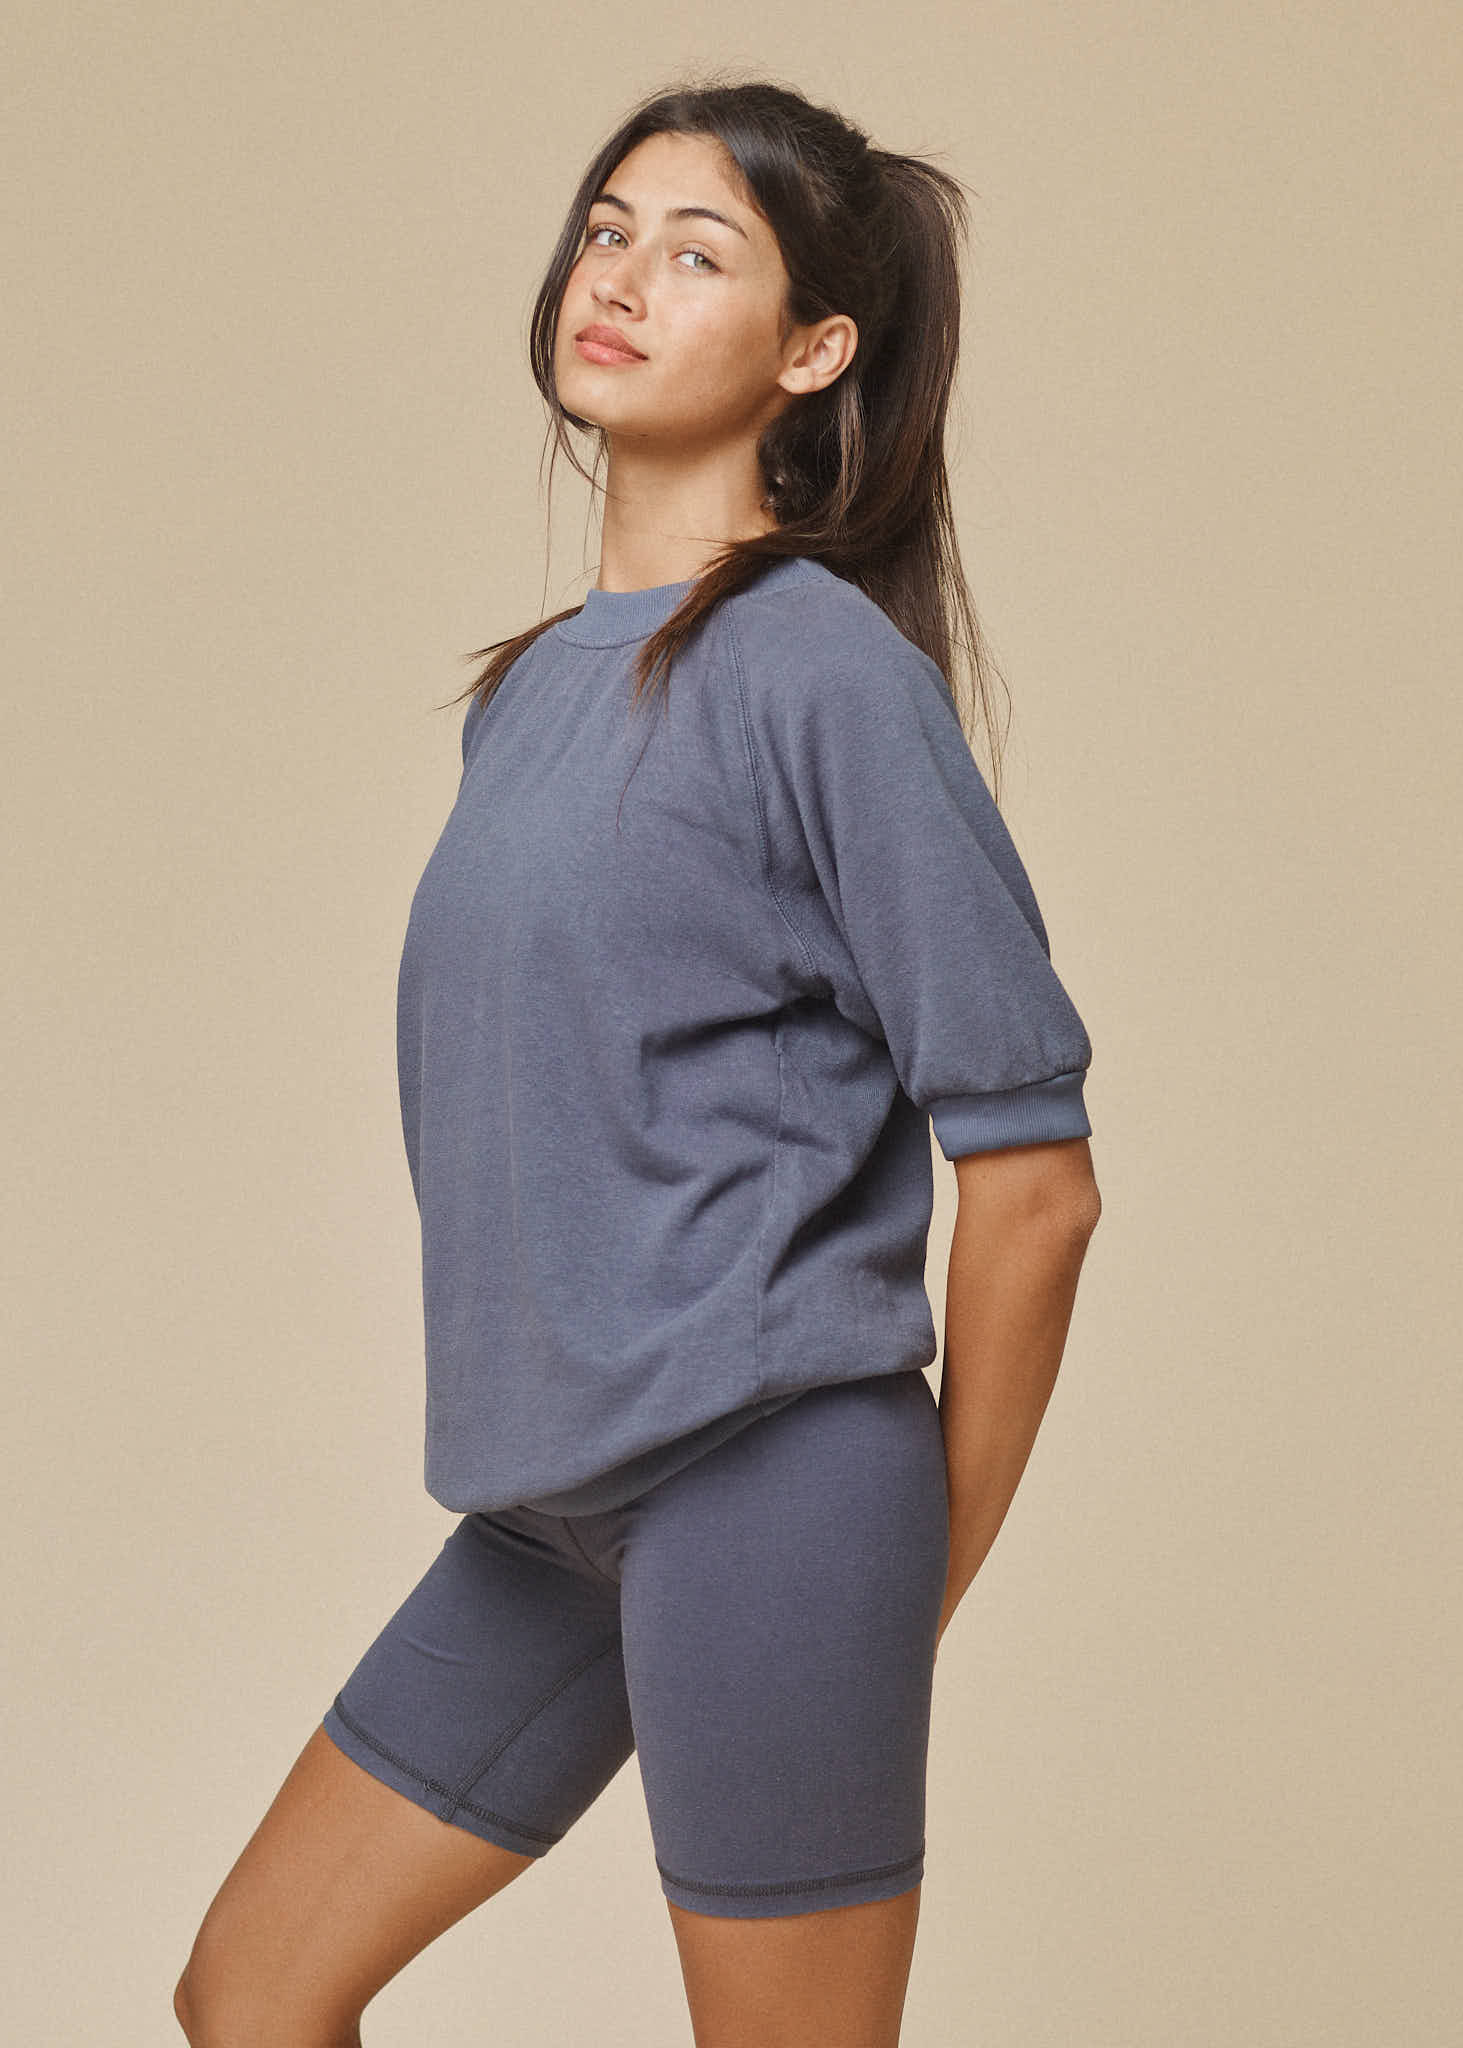 Short Sleeve Raglan Fleece Sweatshirt | Jungmaven Hemp Clothing & Accessories / Color: